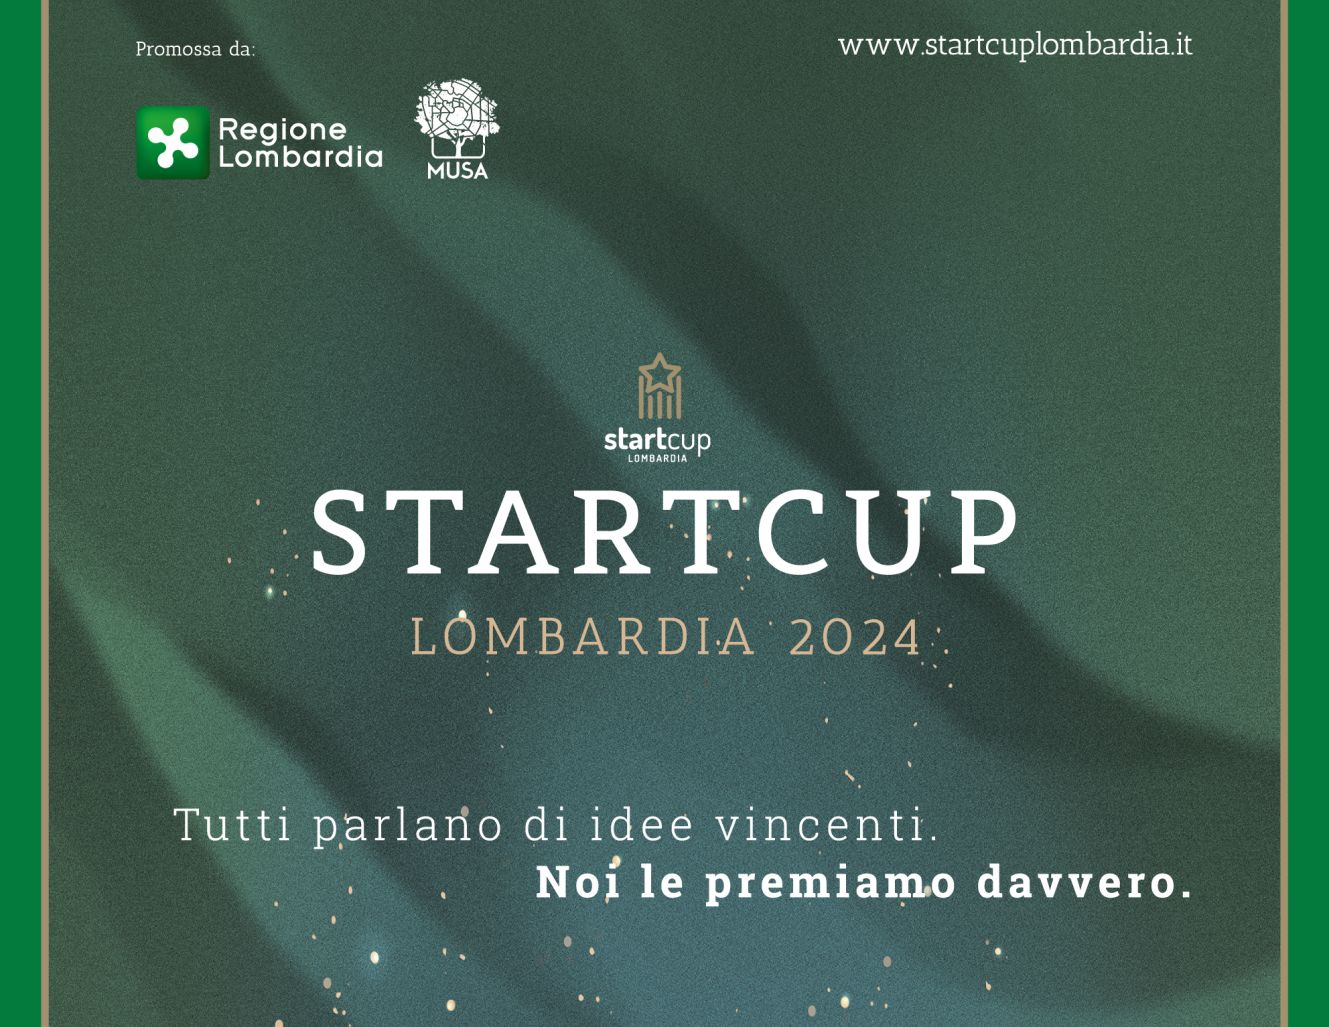 Starcup Lombardia, il 6 giugno parte la challenge per i giovani imprenditori lombardi